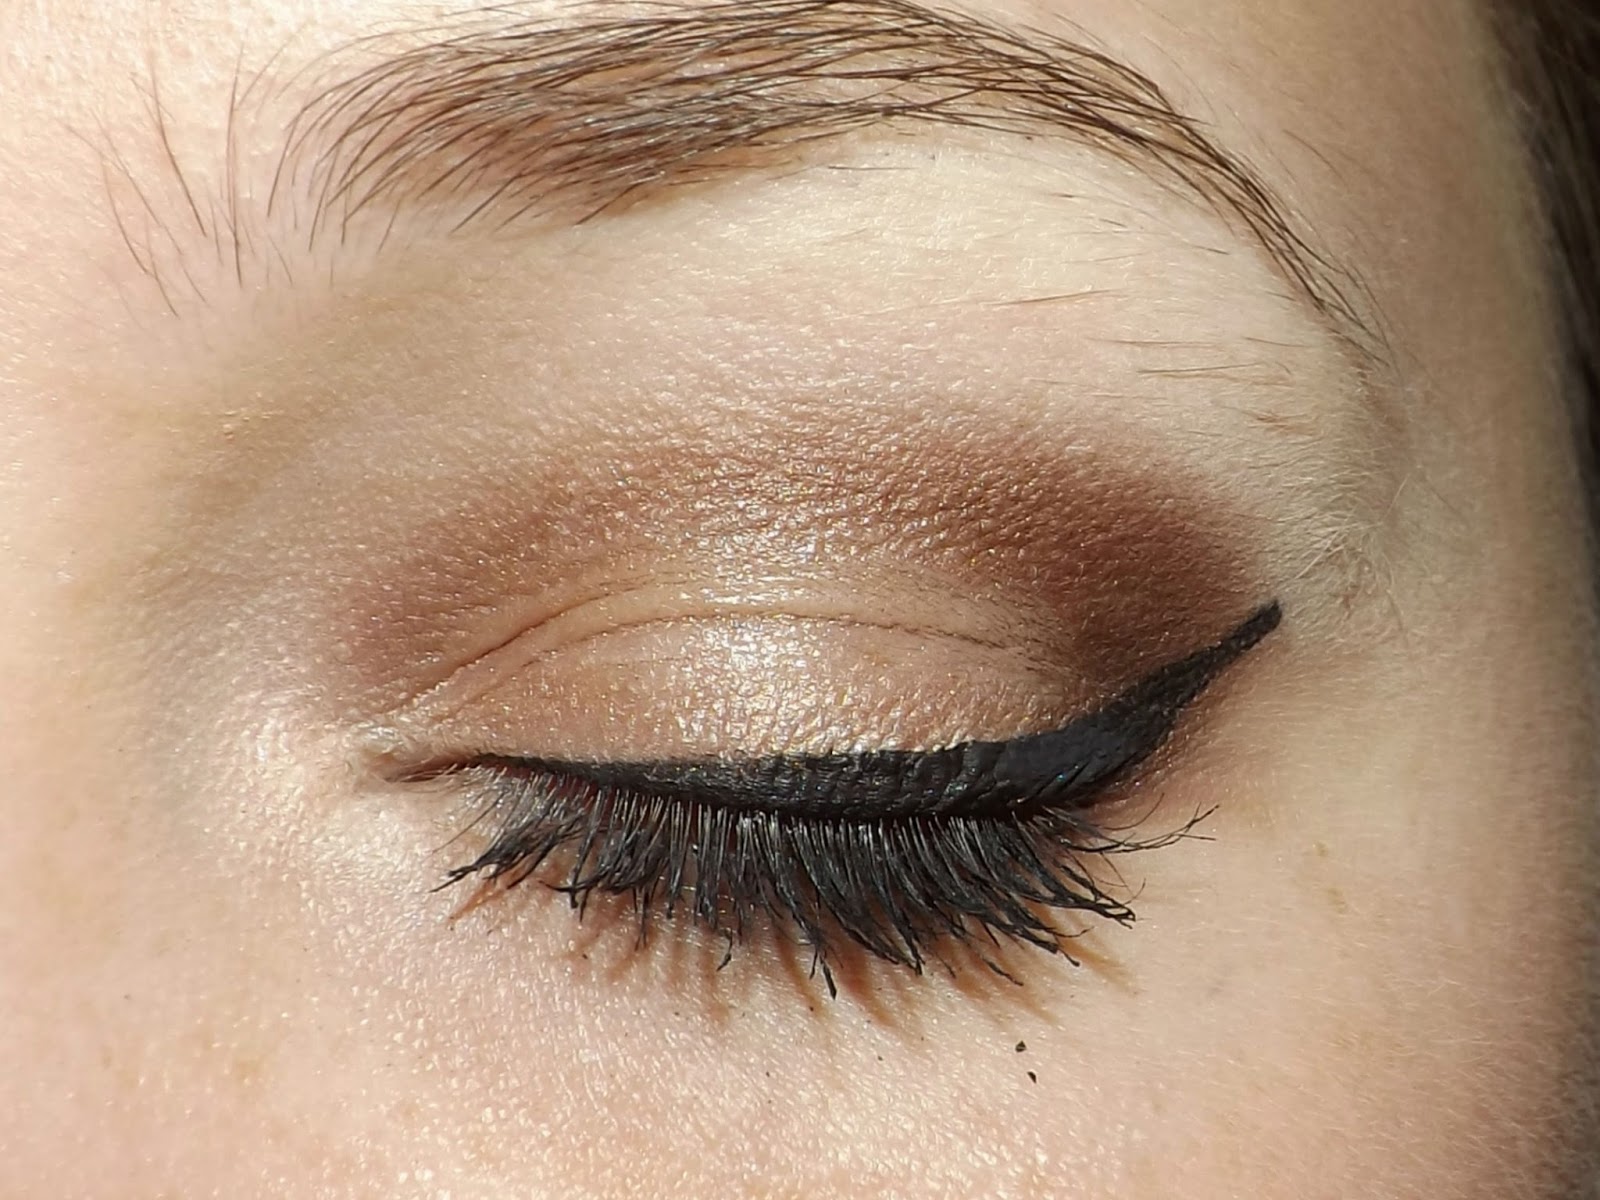 Meghan Trainor Makeup: Black Eyeshadow, Bronze Eyeshadow & Red